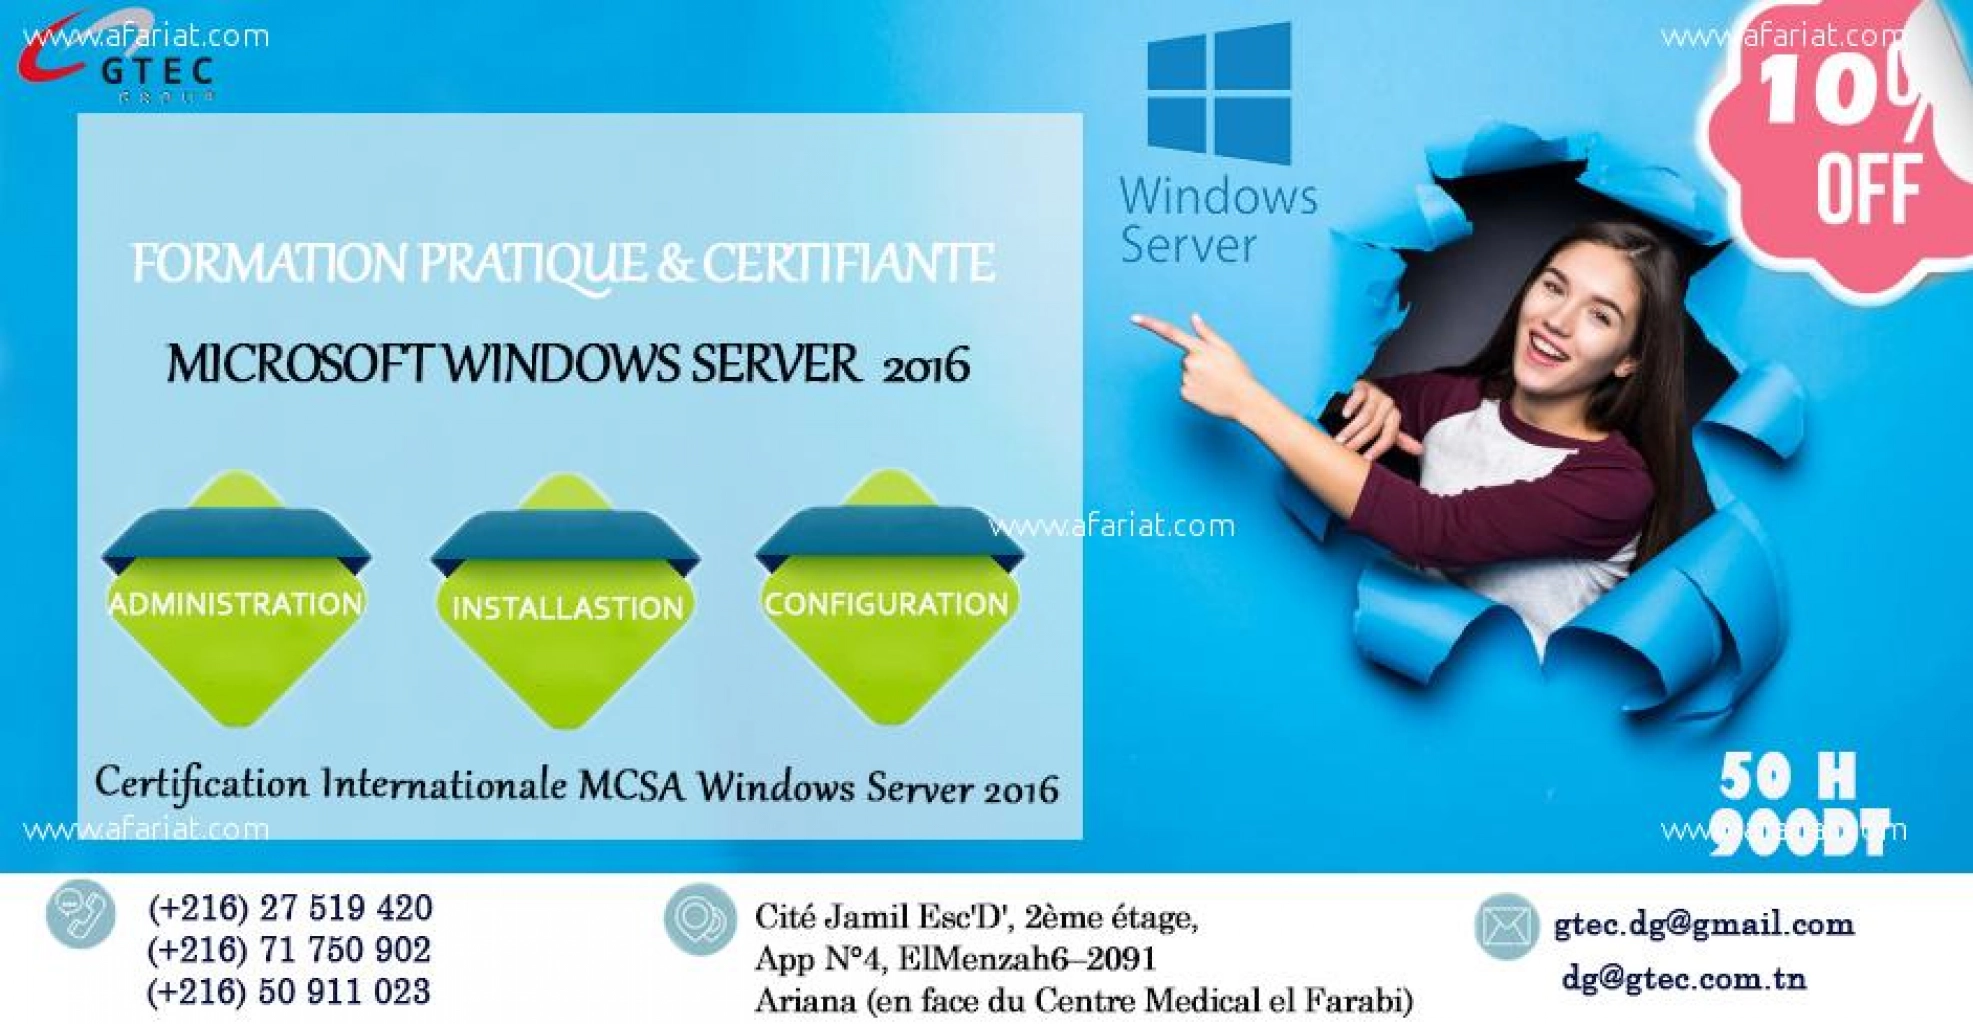 GTEC: Réduction sur la formation Windows Server